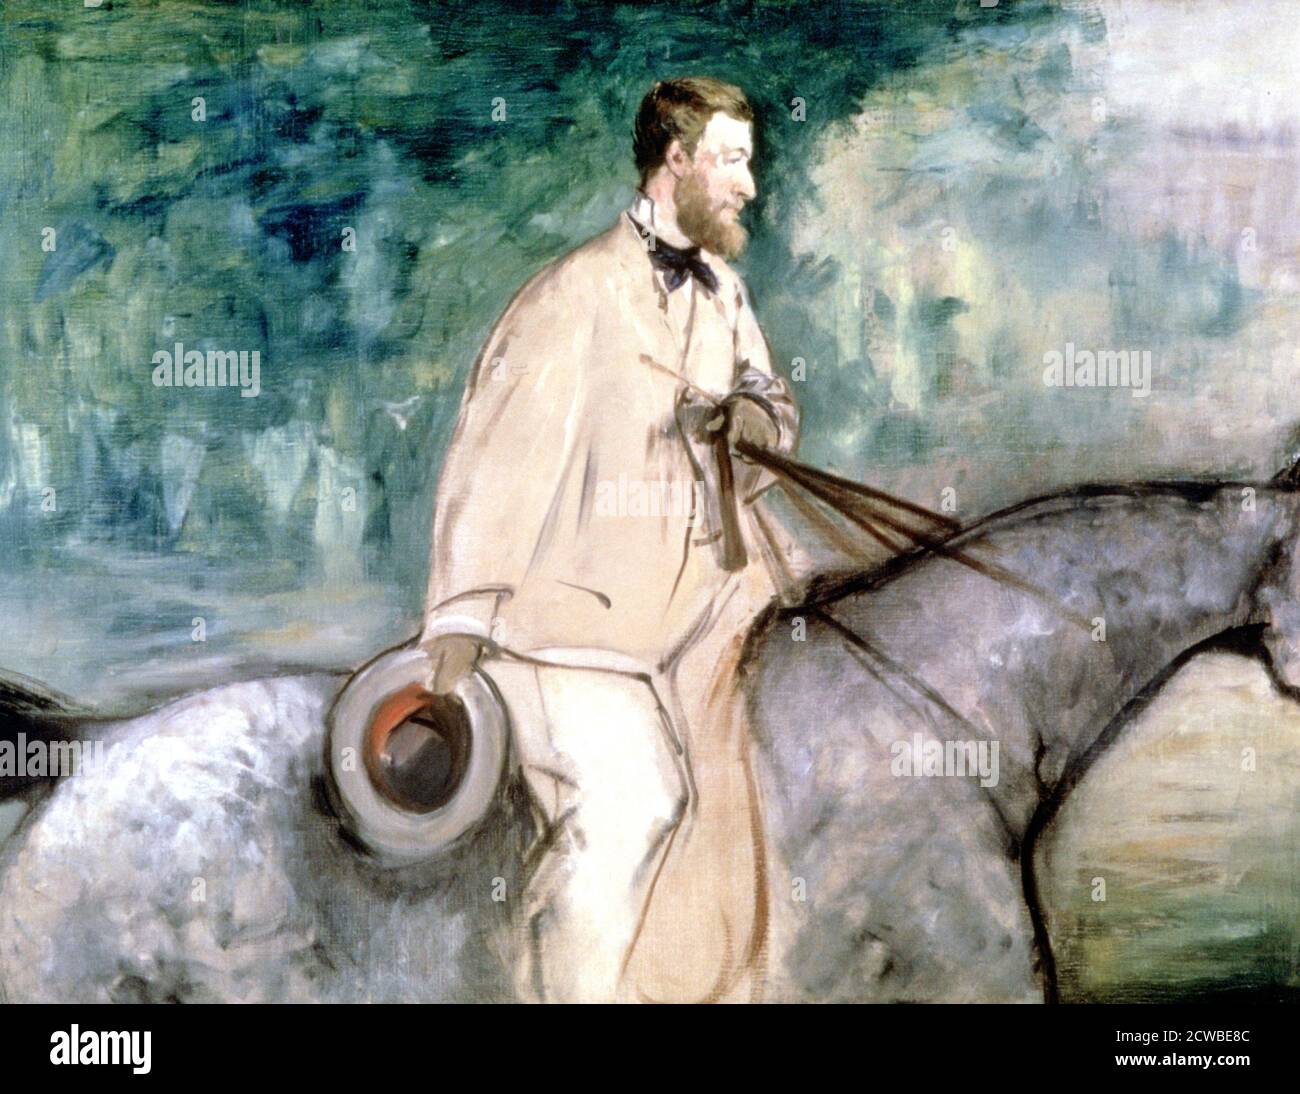 The Painter Guillaume a cavallo', 1870 Artist: Edouard Manet. Edouard Manet (1832-1883) è stato un pittore modernista francese. Fu uno dei primi artisti del XIX secolo a dipingere la vita moderna. Foto Stock